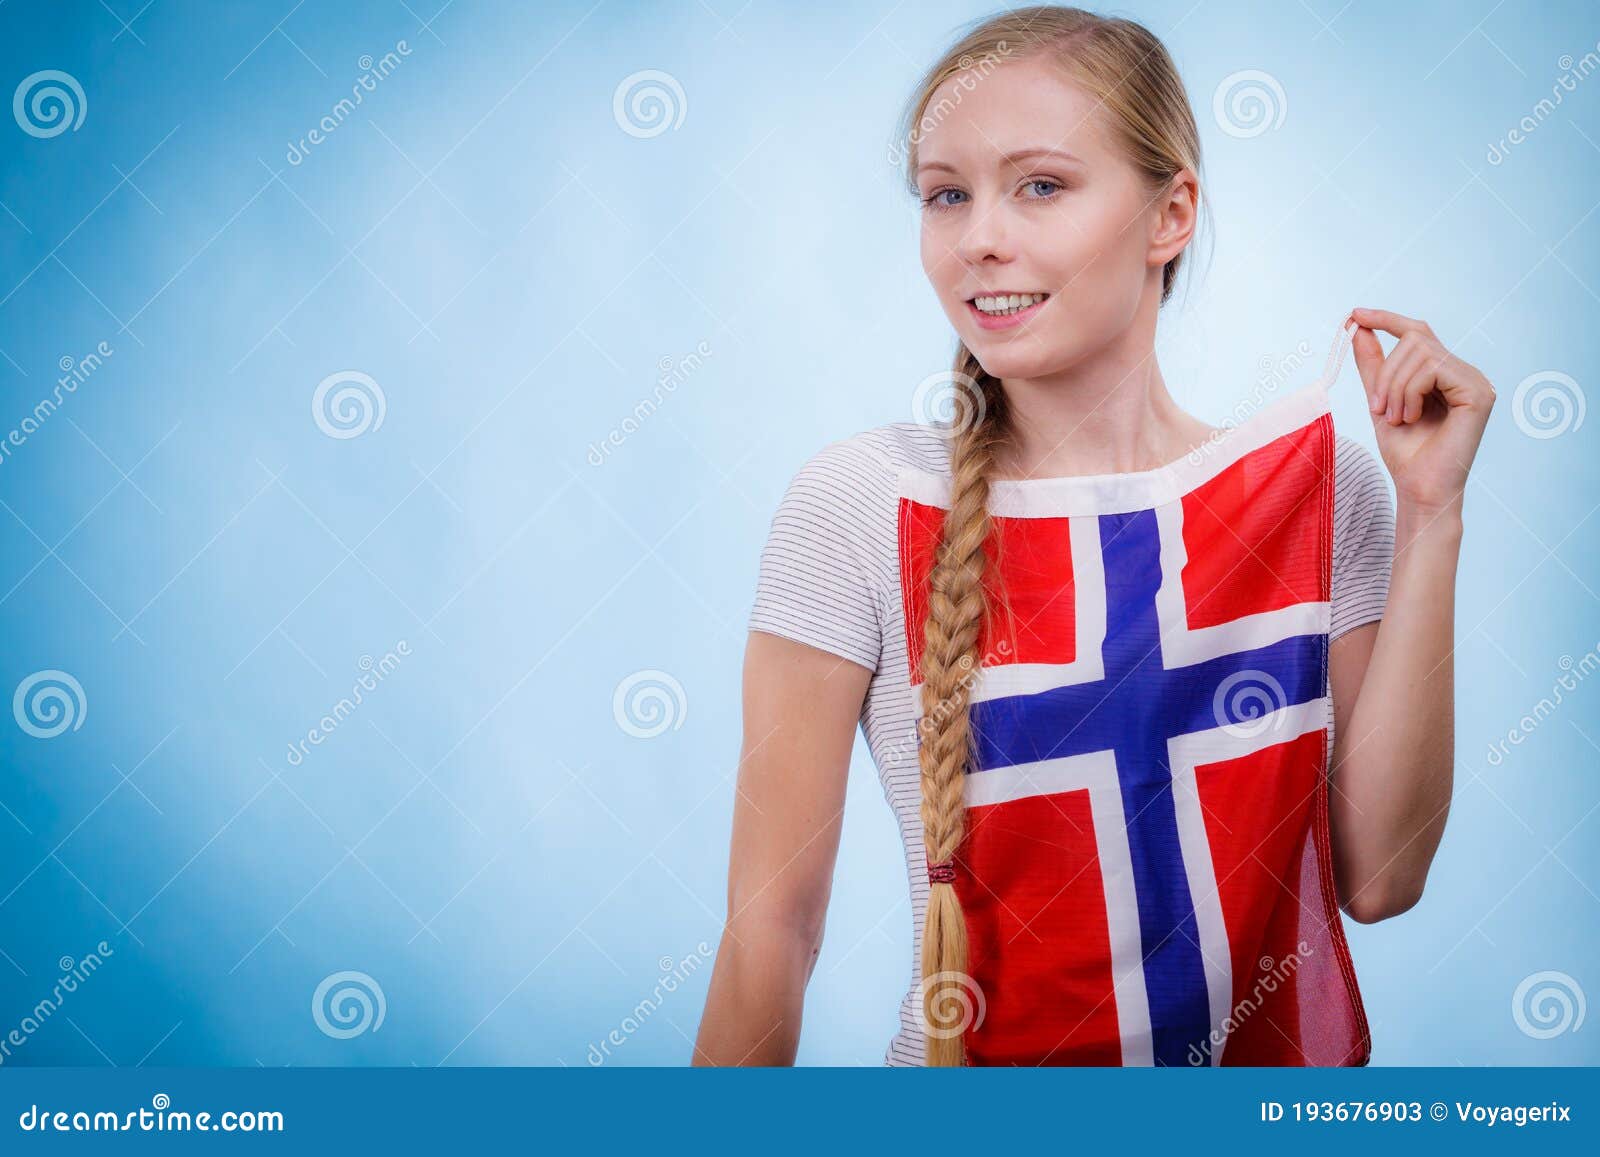 Girls norwegian teen 